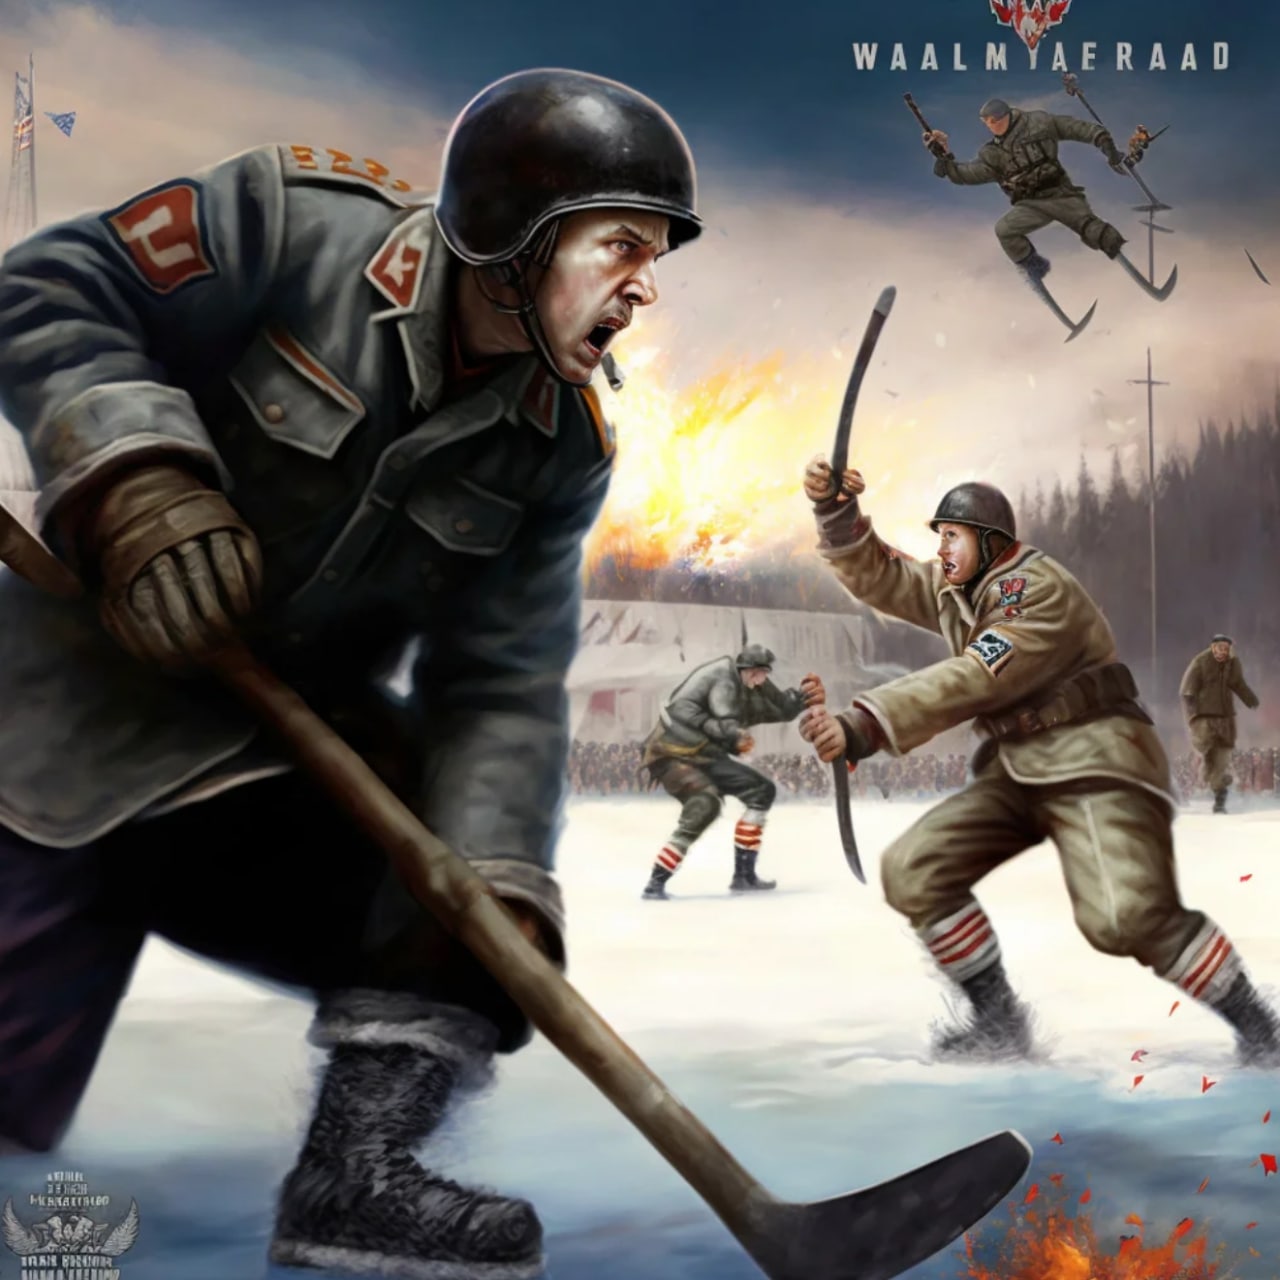 NHL World War